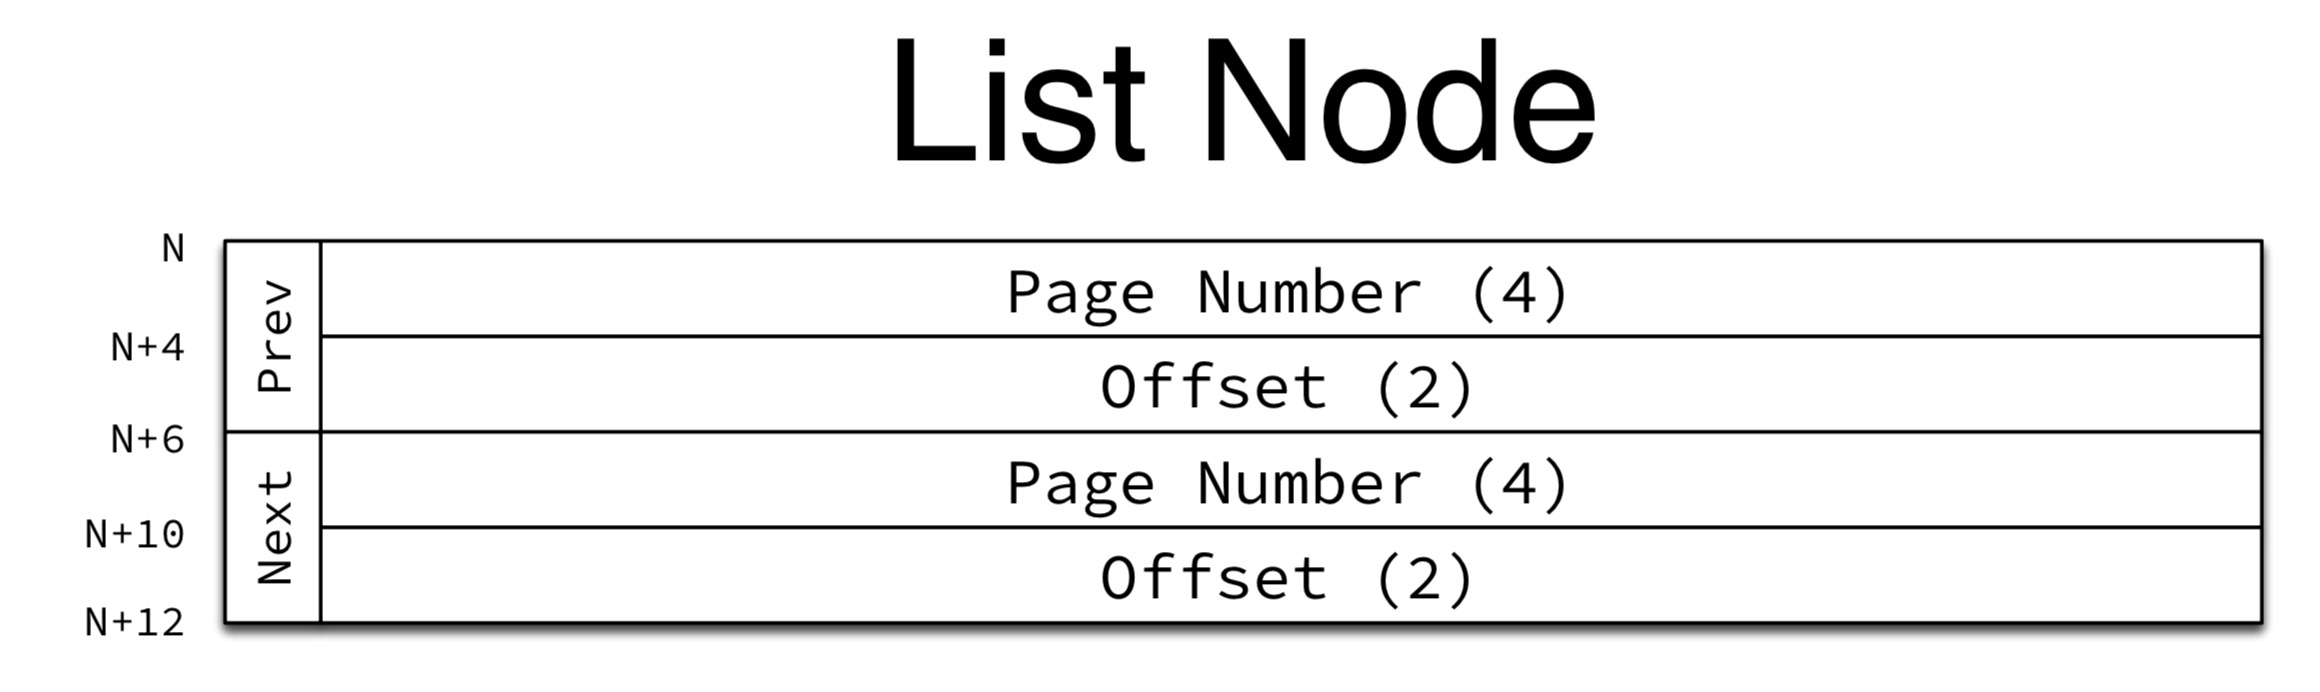 list_node